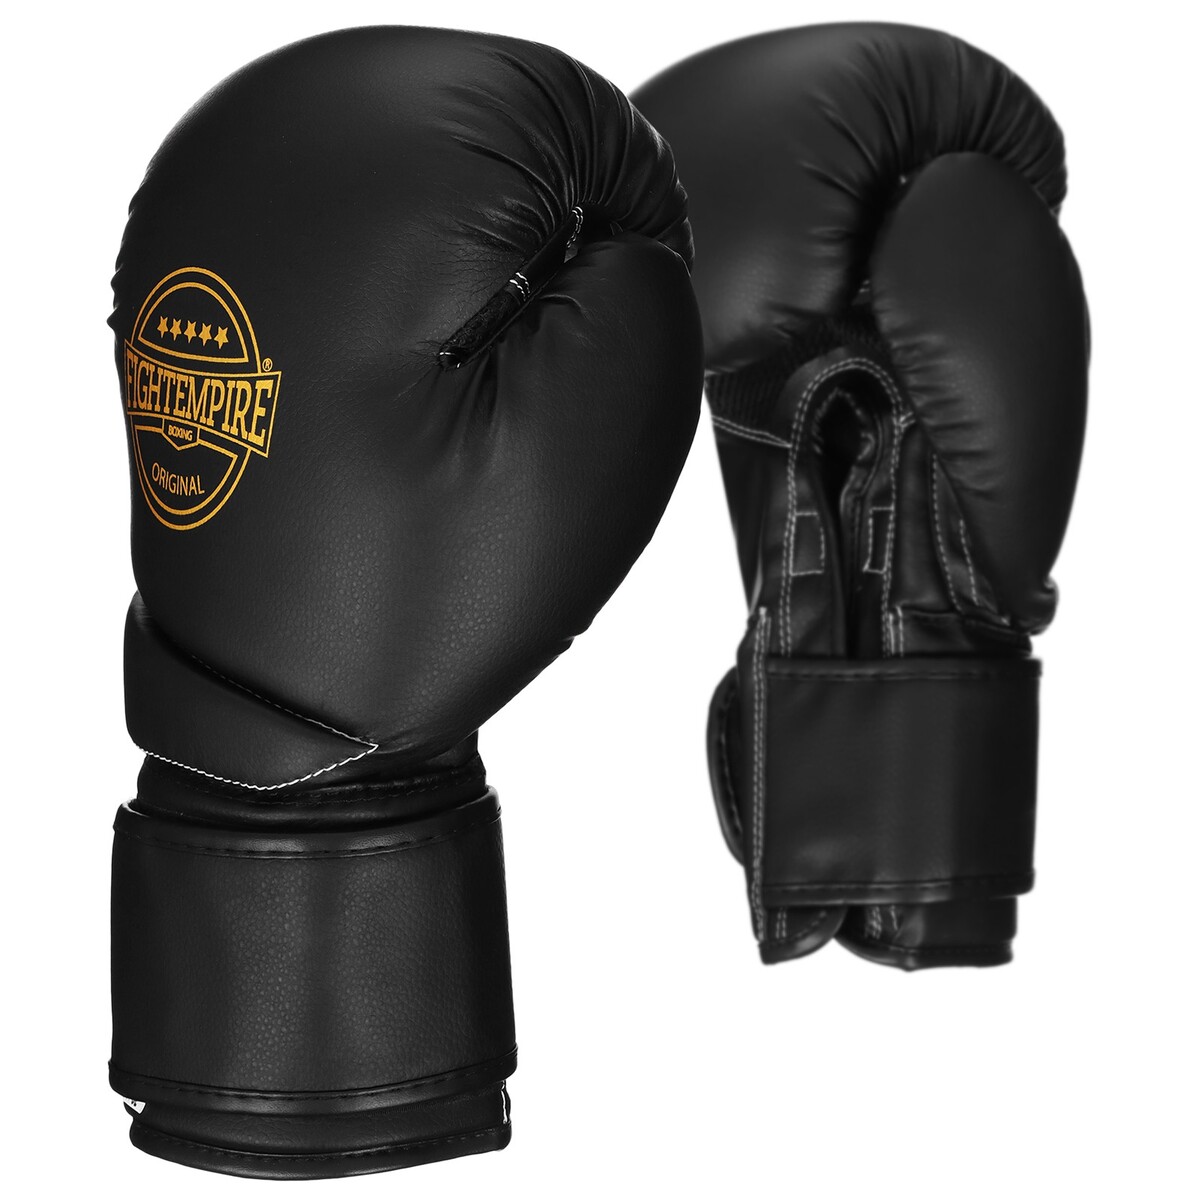 Перчатки боксерские fight empire, platinum, черно-белые, размер 8 oz